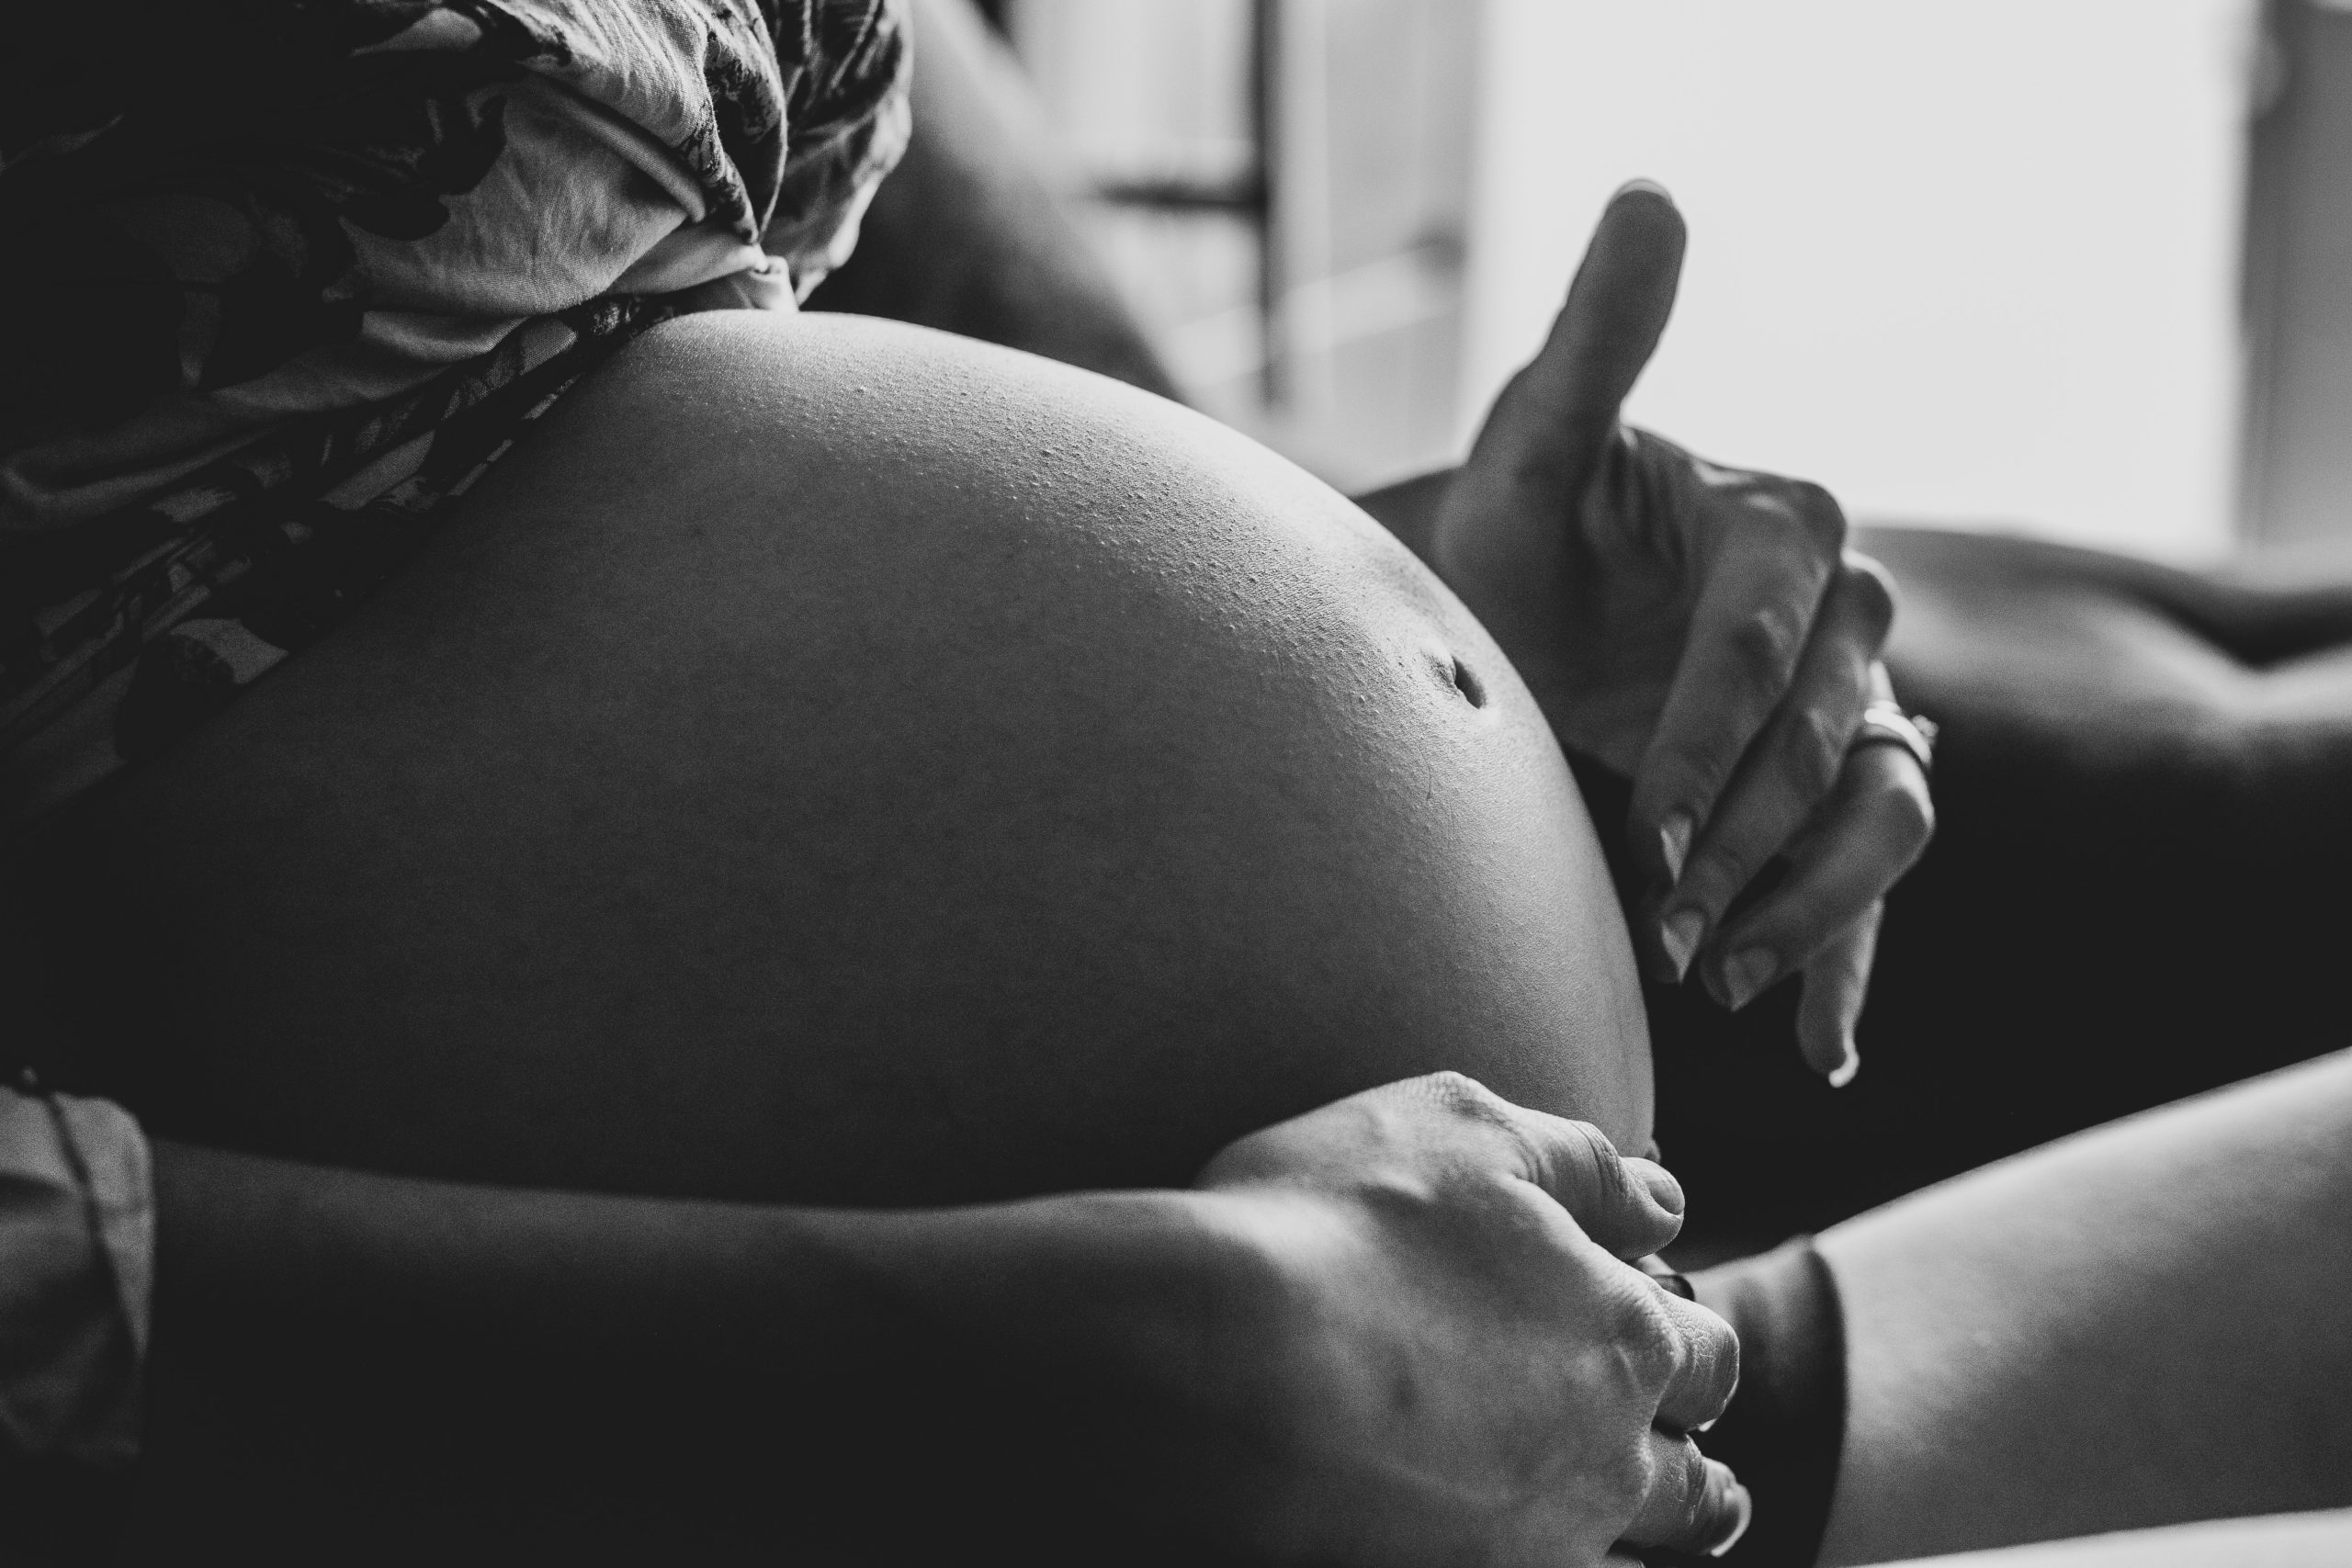 tehotna-porod-tehotenstvi